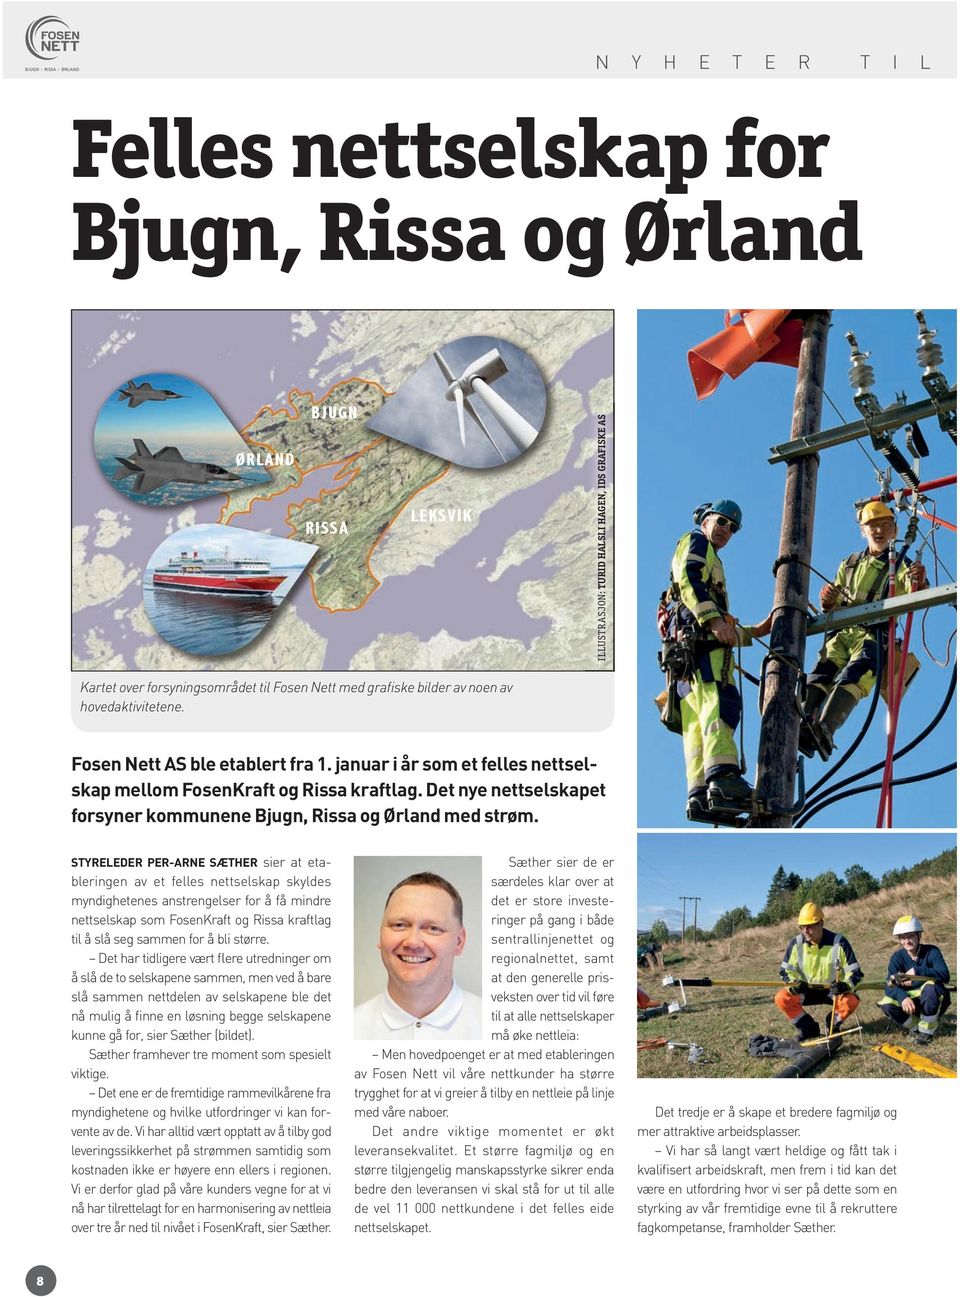 Det nye nettselskapet forsyner kommunene Bjugn, Rissa og Ørland med strøm.